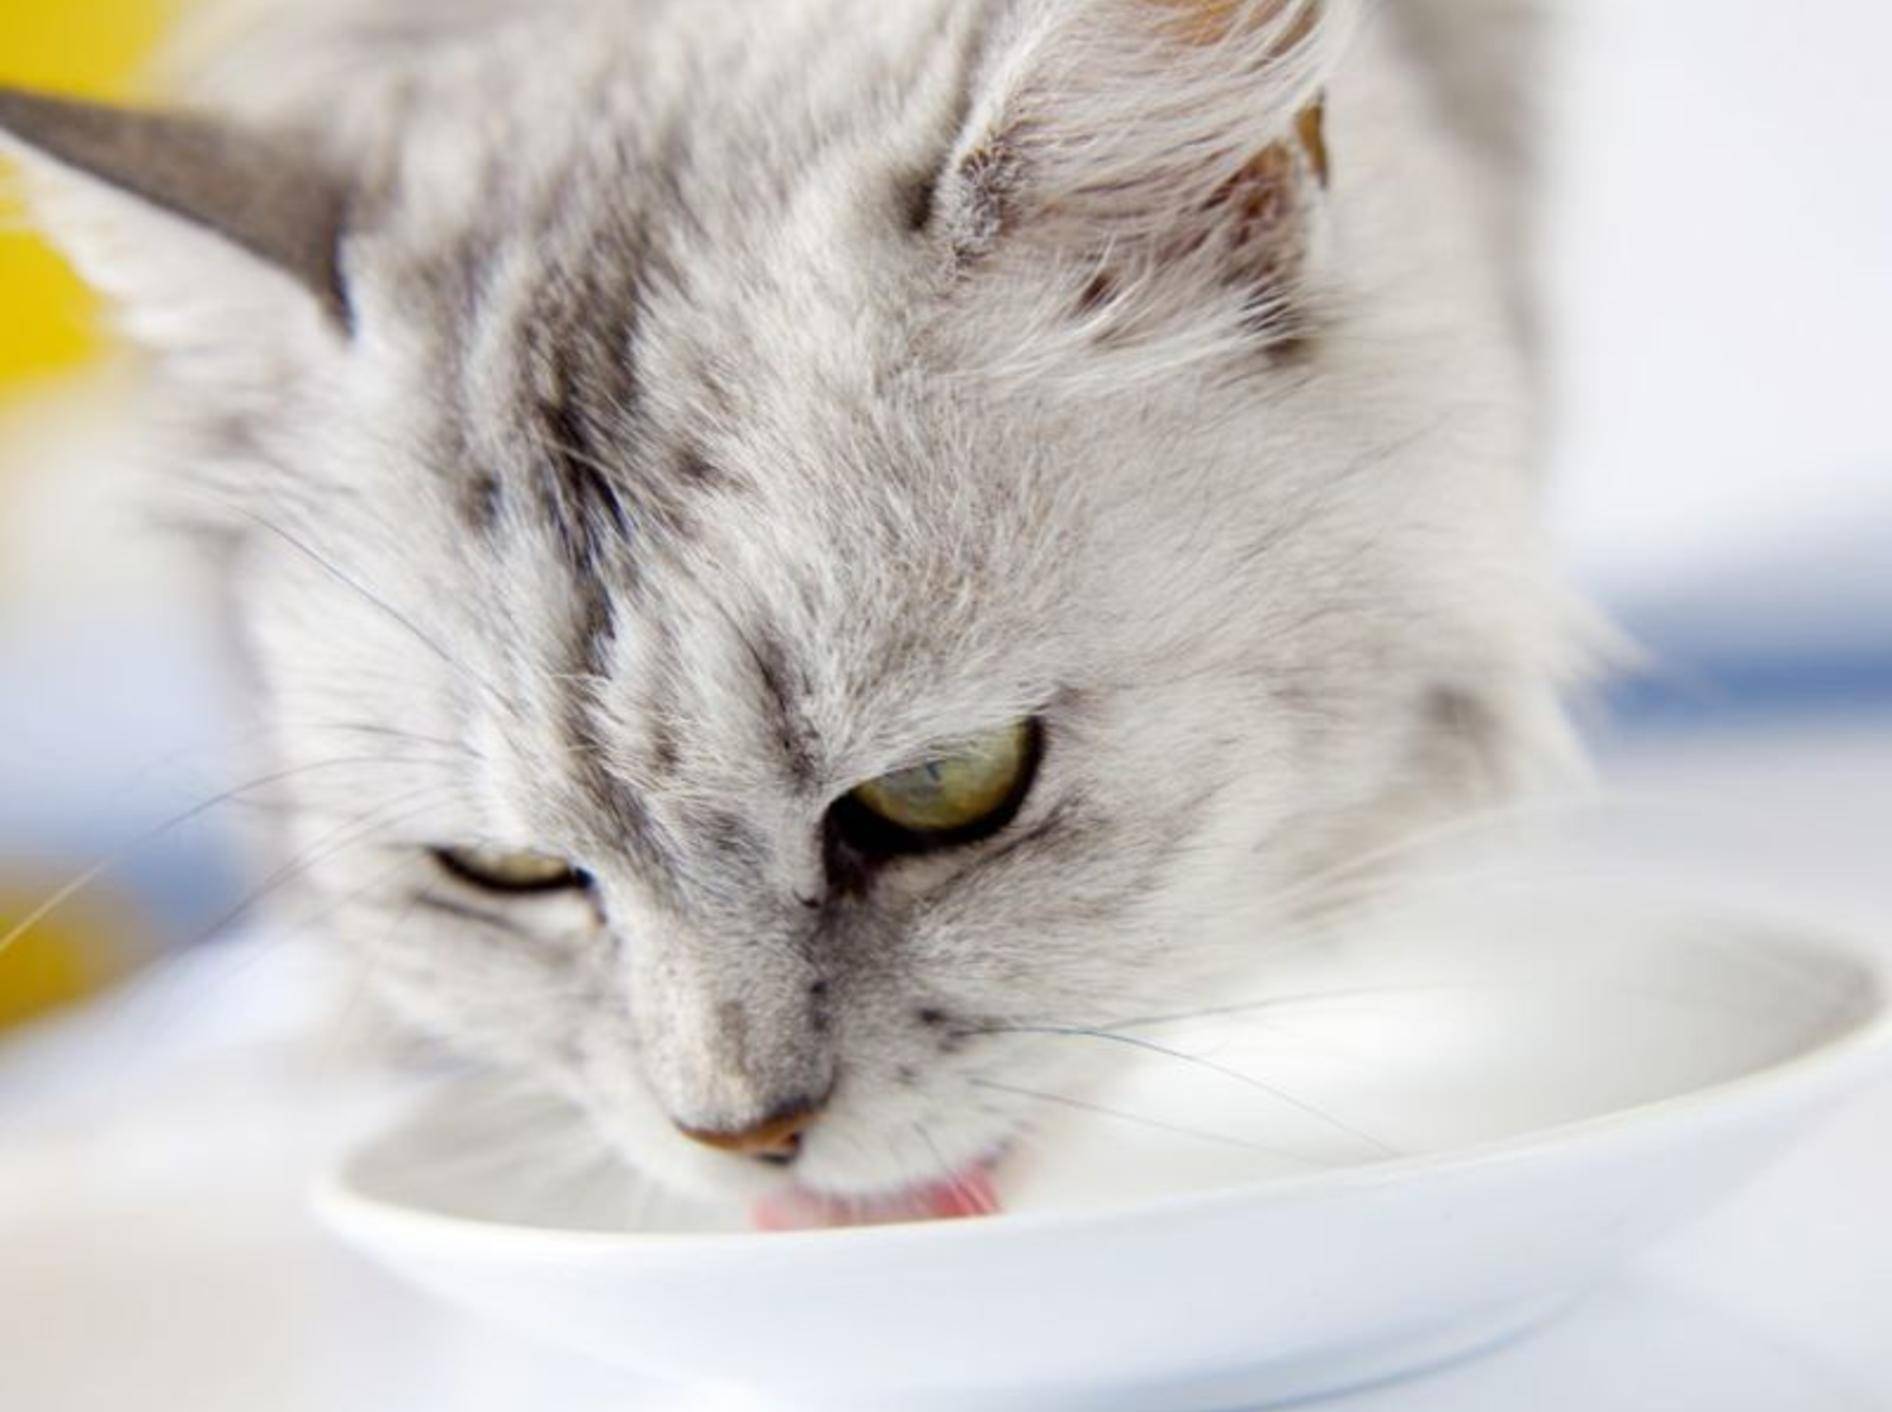 Katze trinkt Milch